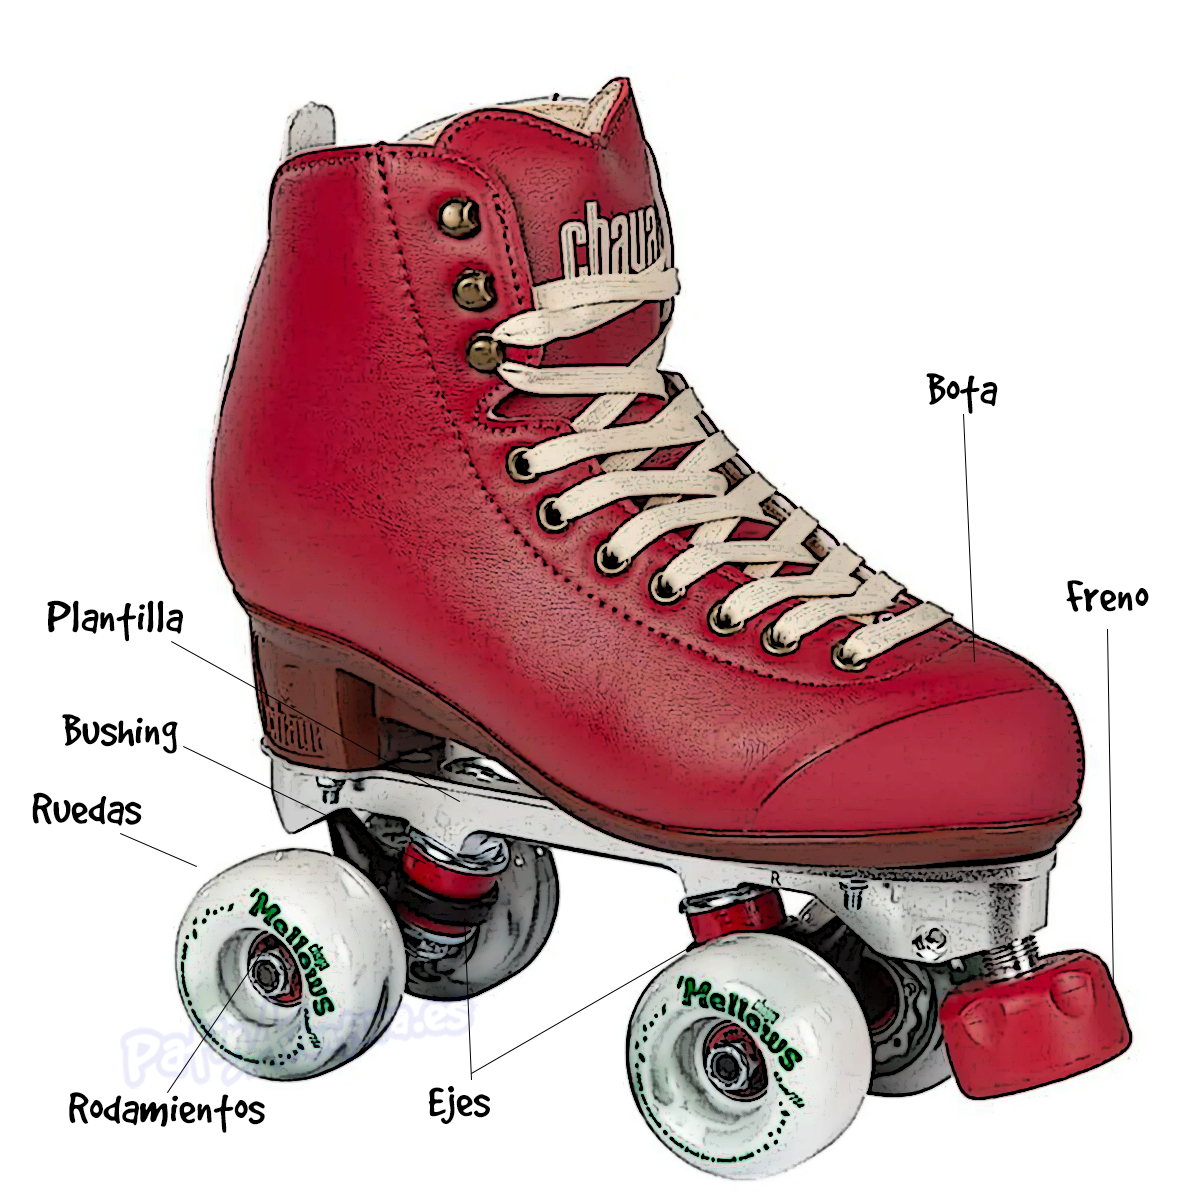 Los mejores cascos para patines en línea o cuatro ruedas